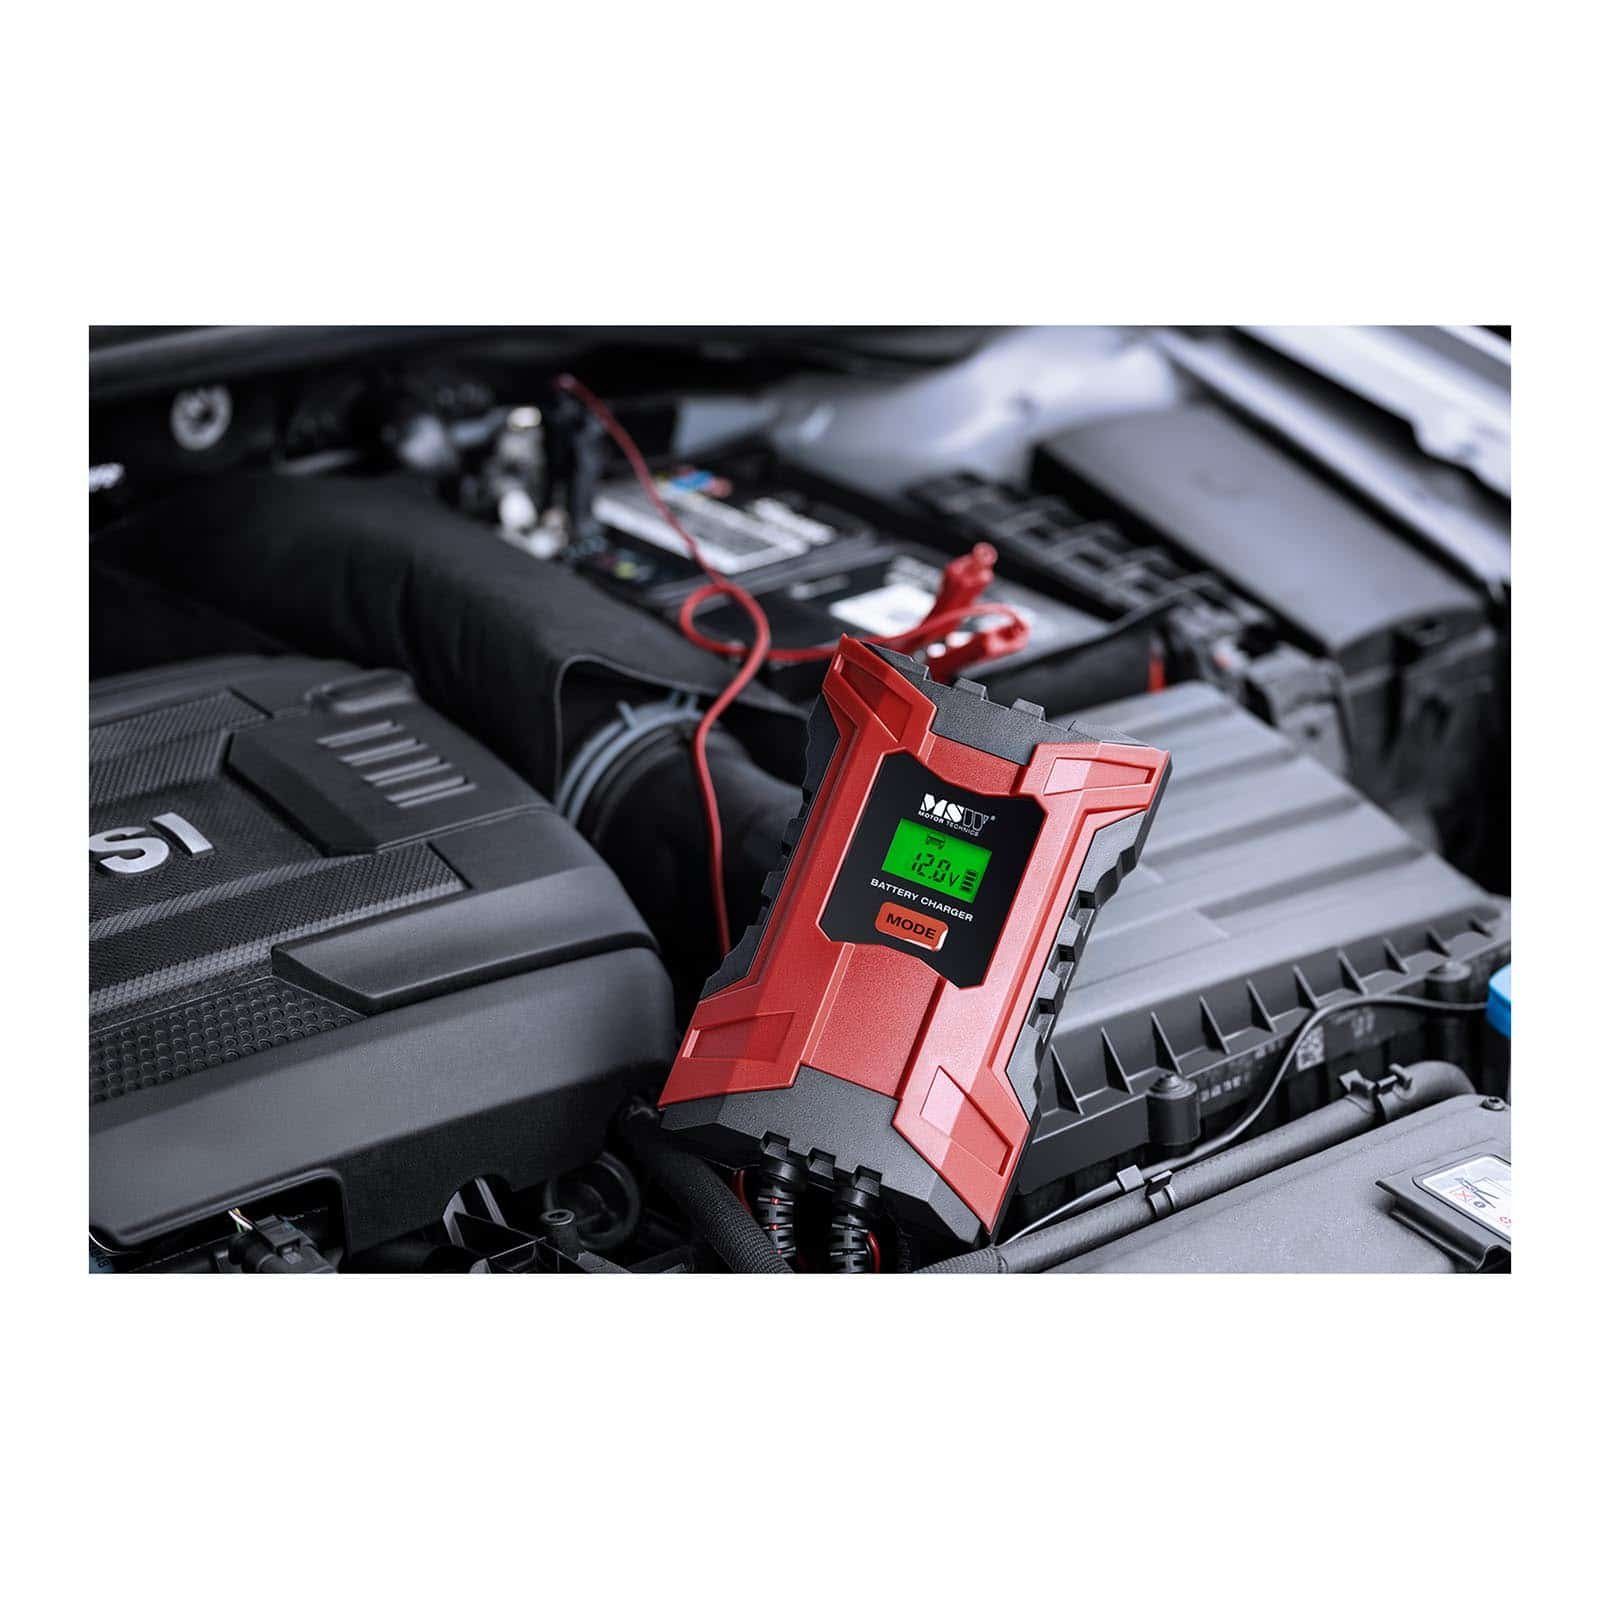 MSW Auto Ladegerät Batterieladegerät Autobatterie-Ladegerät Schnellladen 6V/2A Pkw 12V/6A Kfz LCD